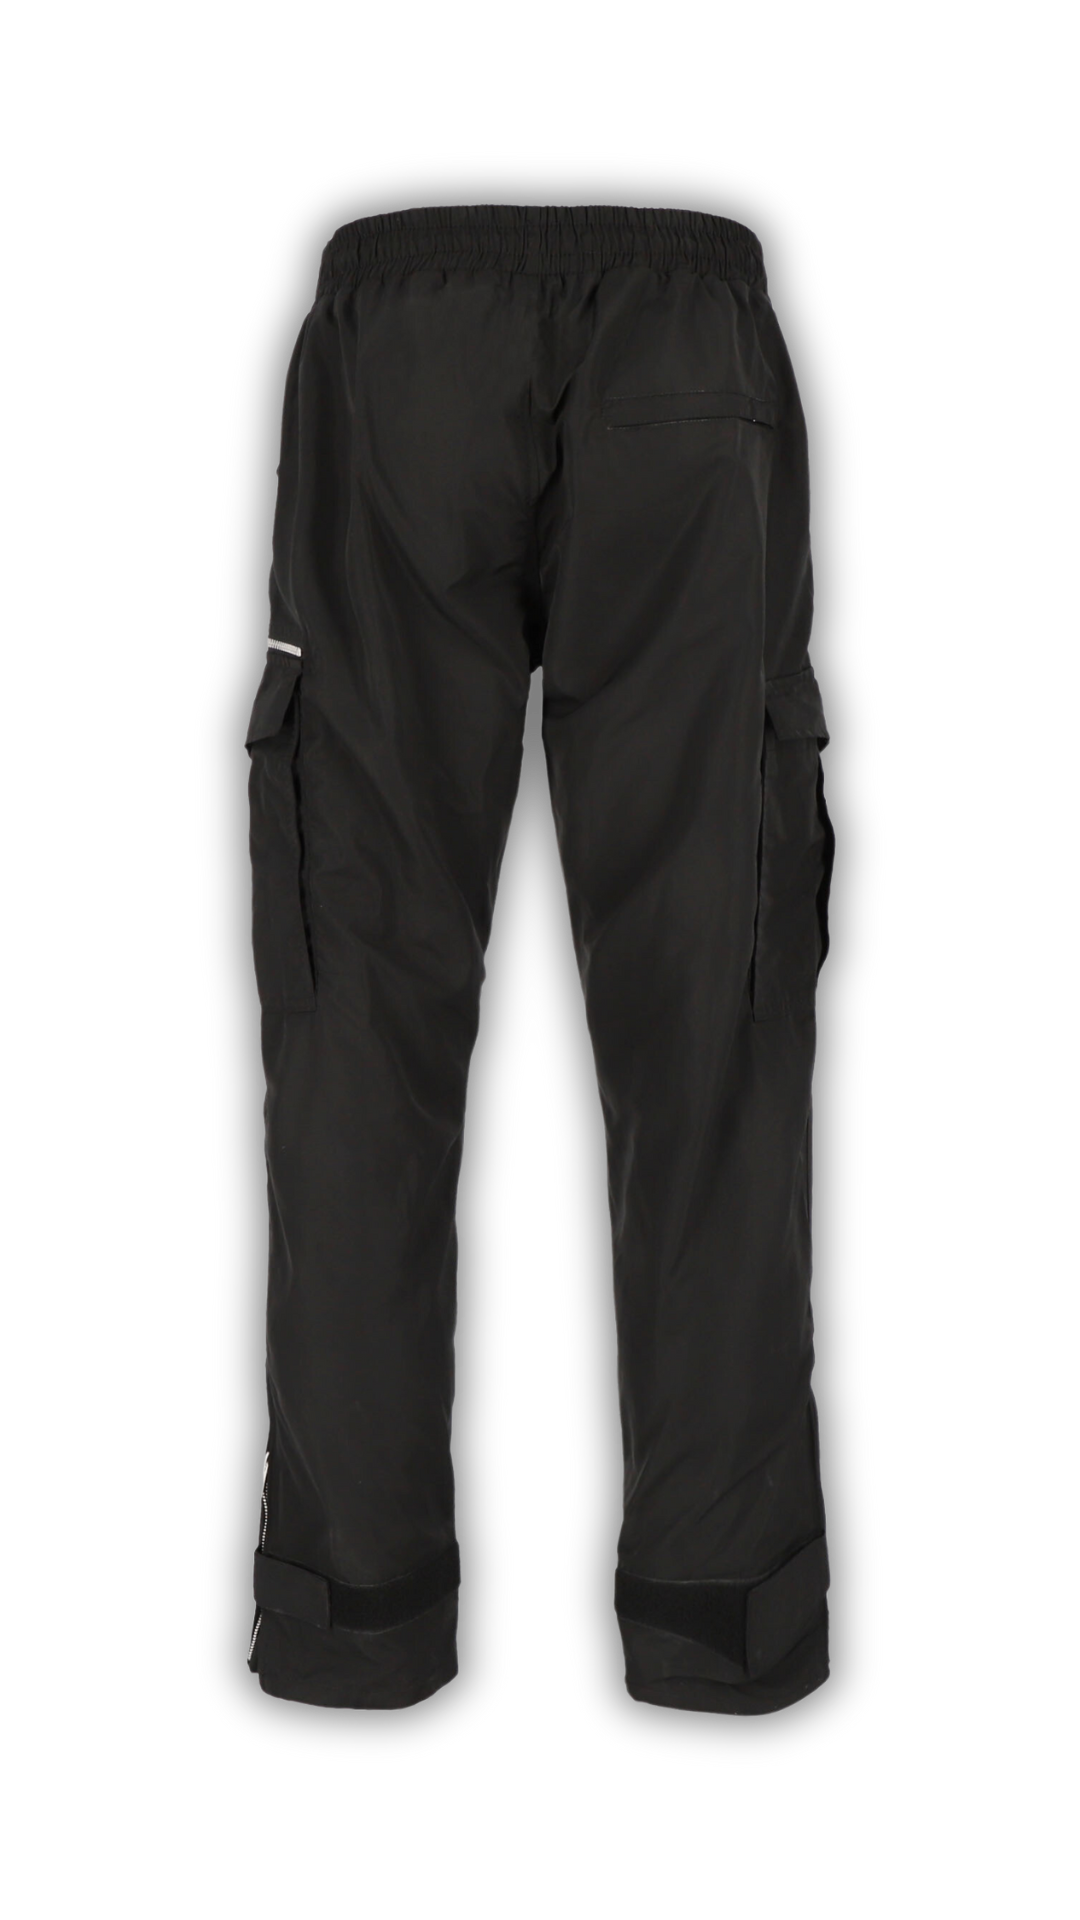 Rückansicht einer schwarzen, lässigen Jogginghose mit Cargo-Taschendetails und schlichtem Design für vielseitige Streetwear-Kombinationen.